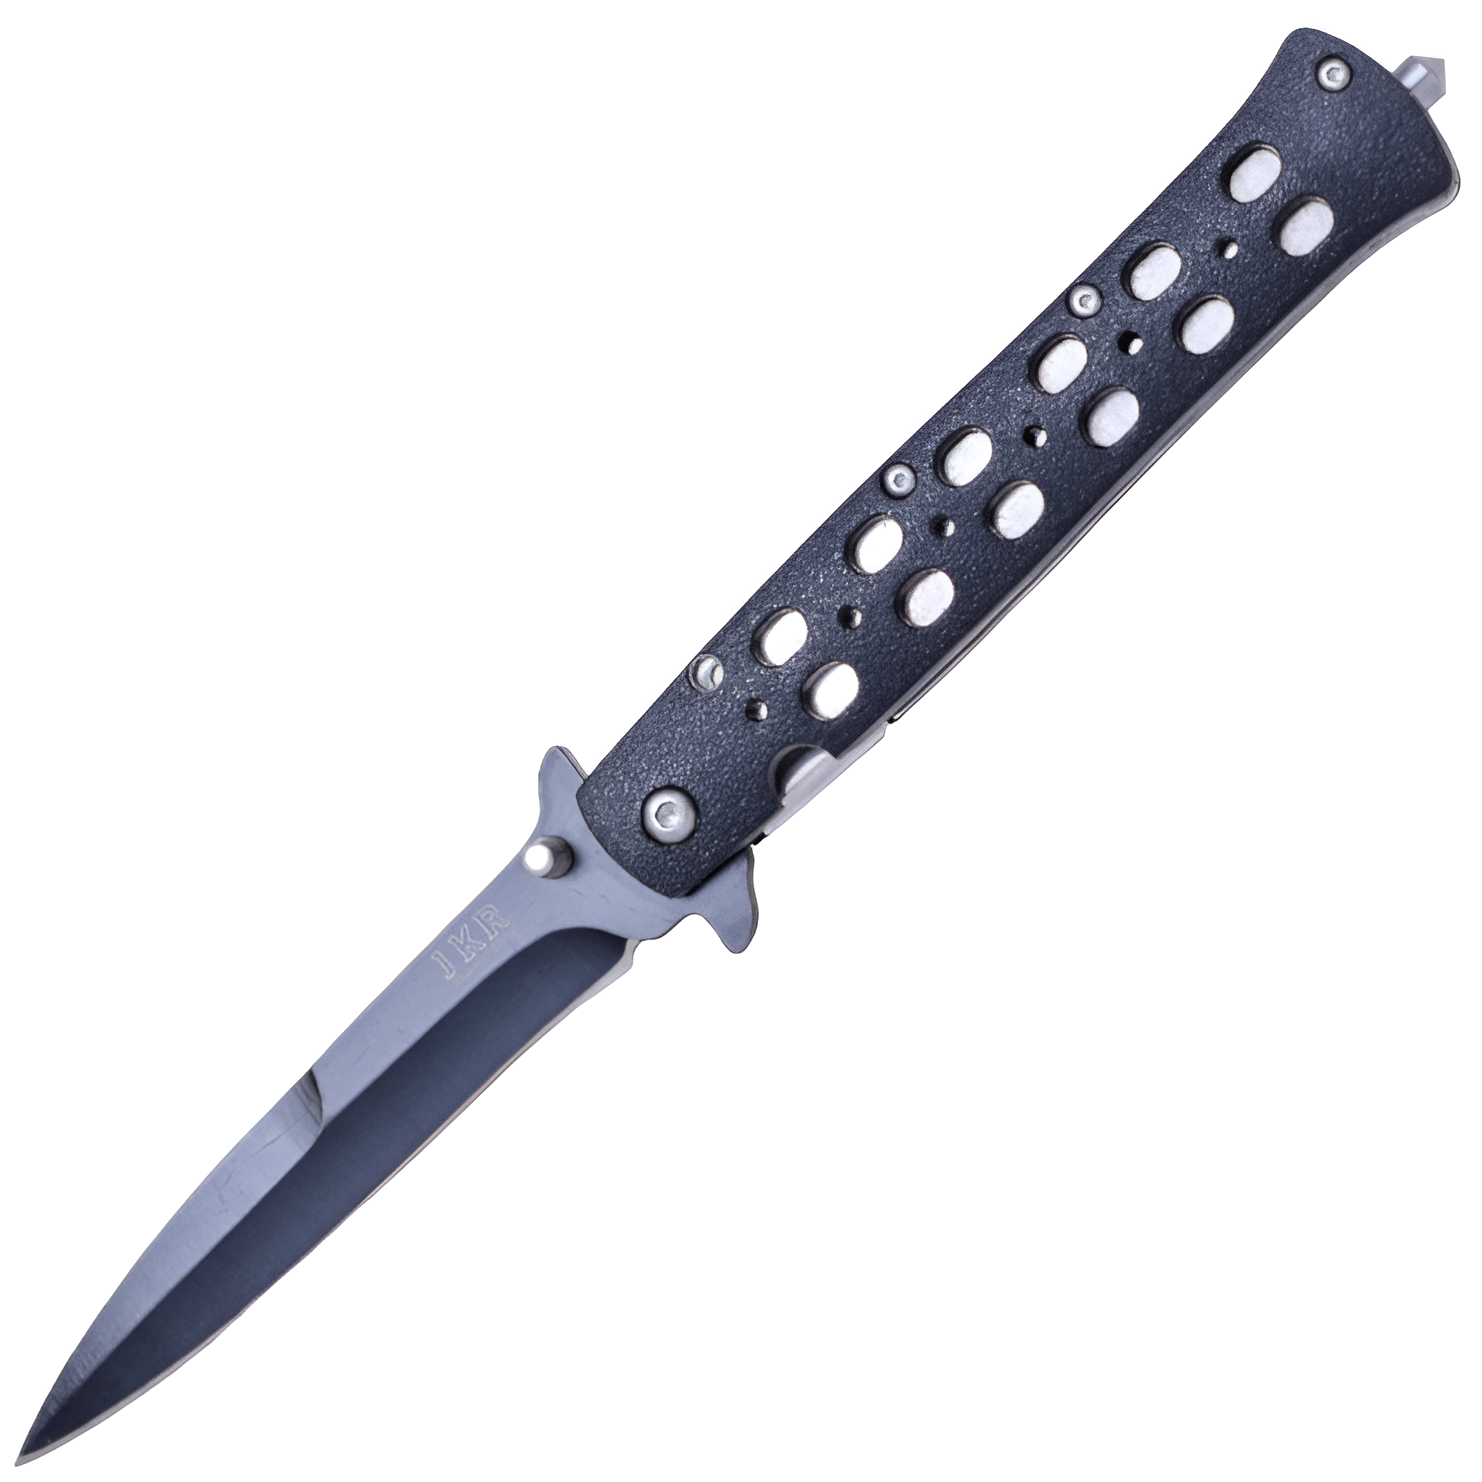 JKR Zavírací nůž, 10 cm, hliník, černý. Kvalitní nůž s čepelí z oceli 3Cr13MoV a vnitřní pojistkou. Ideální pro každodenní nošení. Střenky z černého hliníku s ocelovým hrotem na rozbíjení oken.